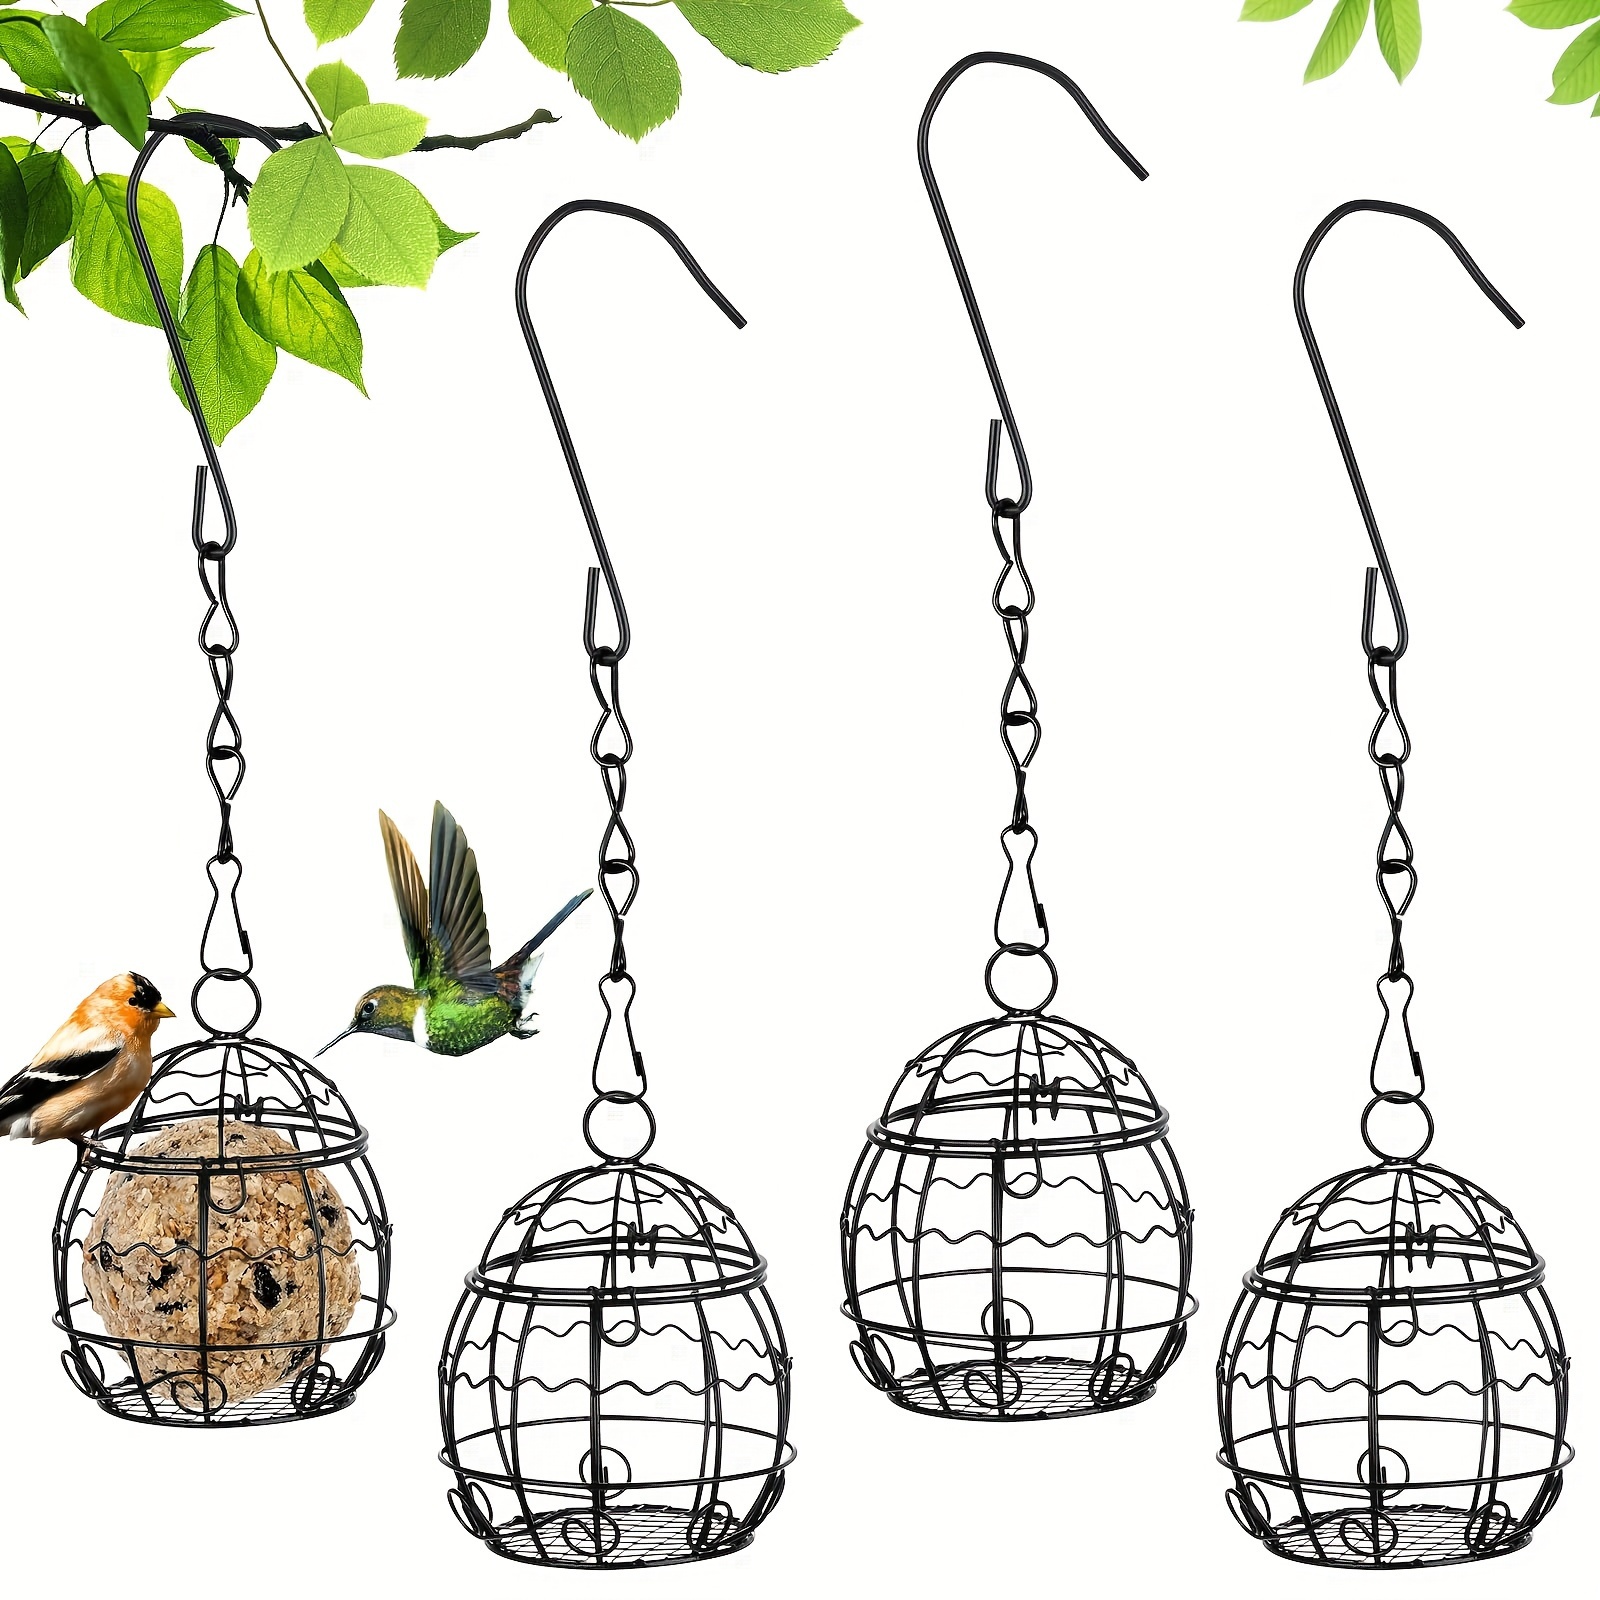 

4pcs Hanging Bird Feeders, Wild Bird Feeder Stations, Ideal For Hanging Wild Birds, Bird Feeder Stand For Birds, Suitable For Balconies Or Bird Cages